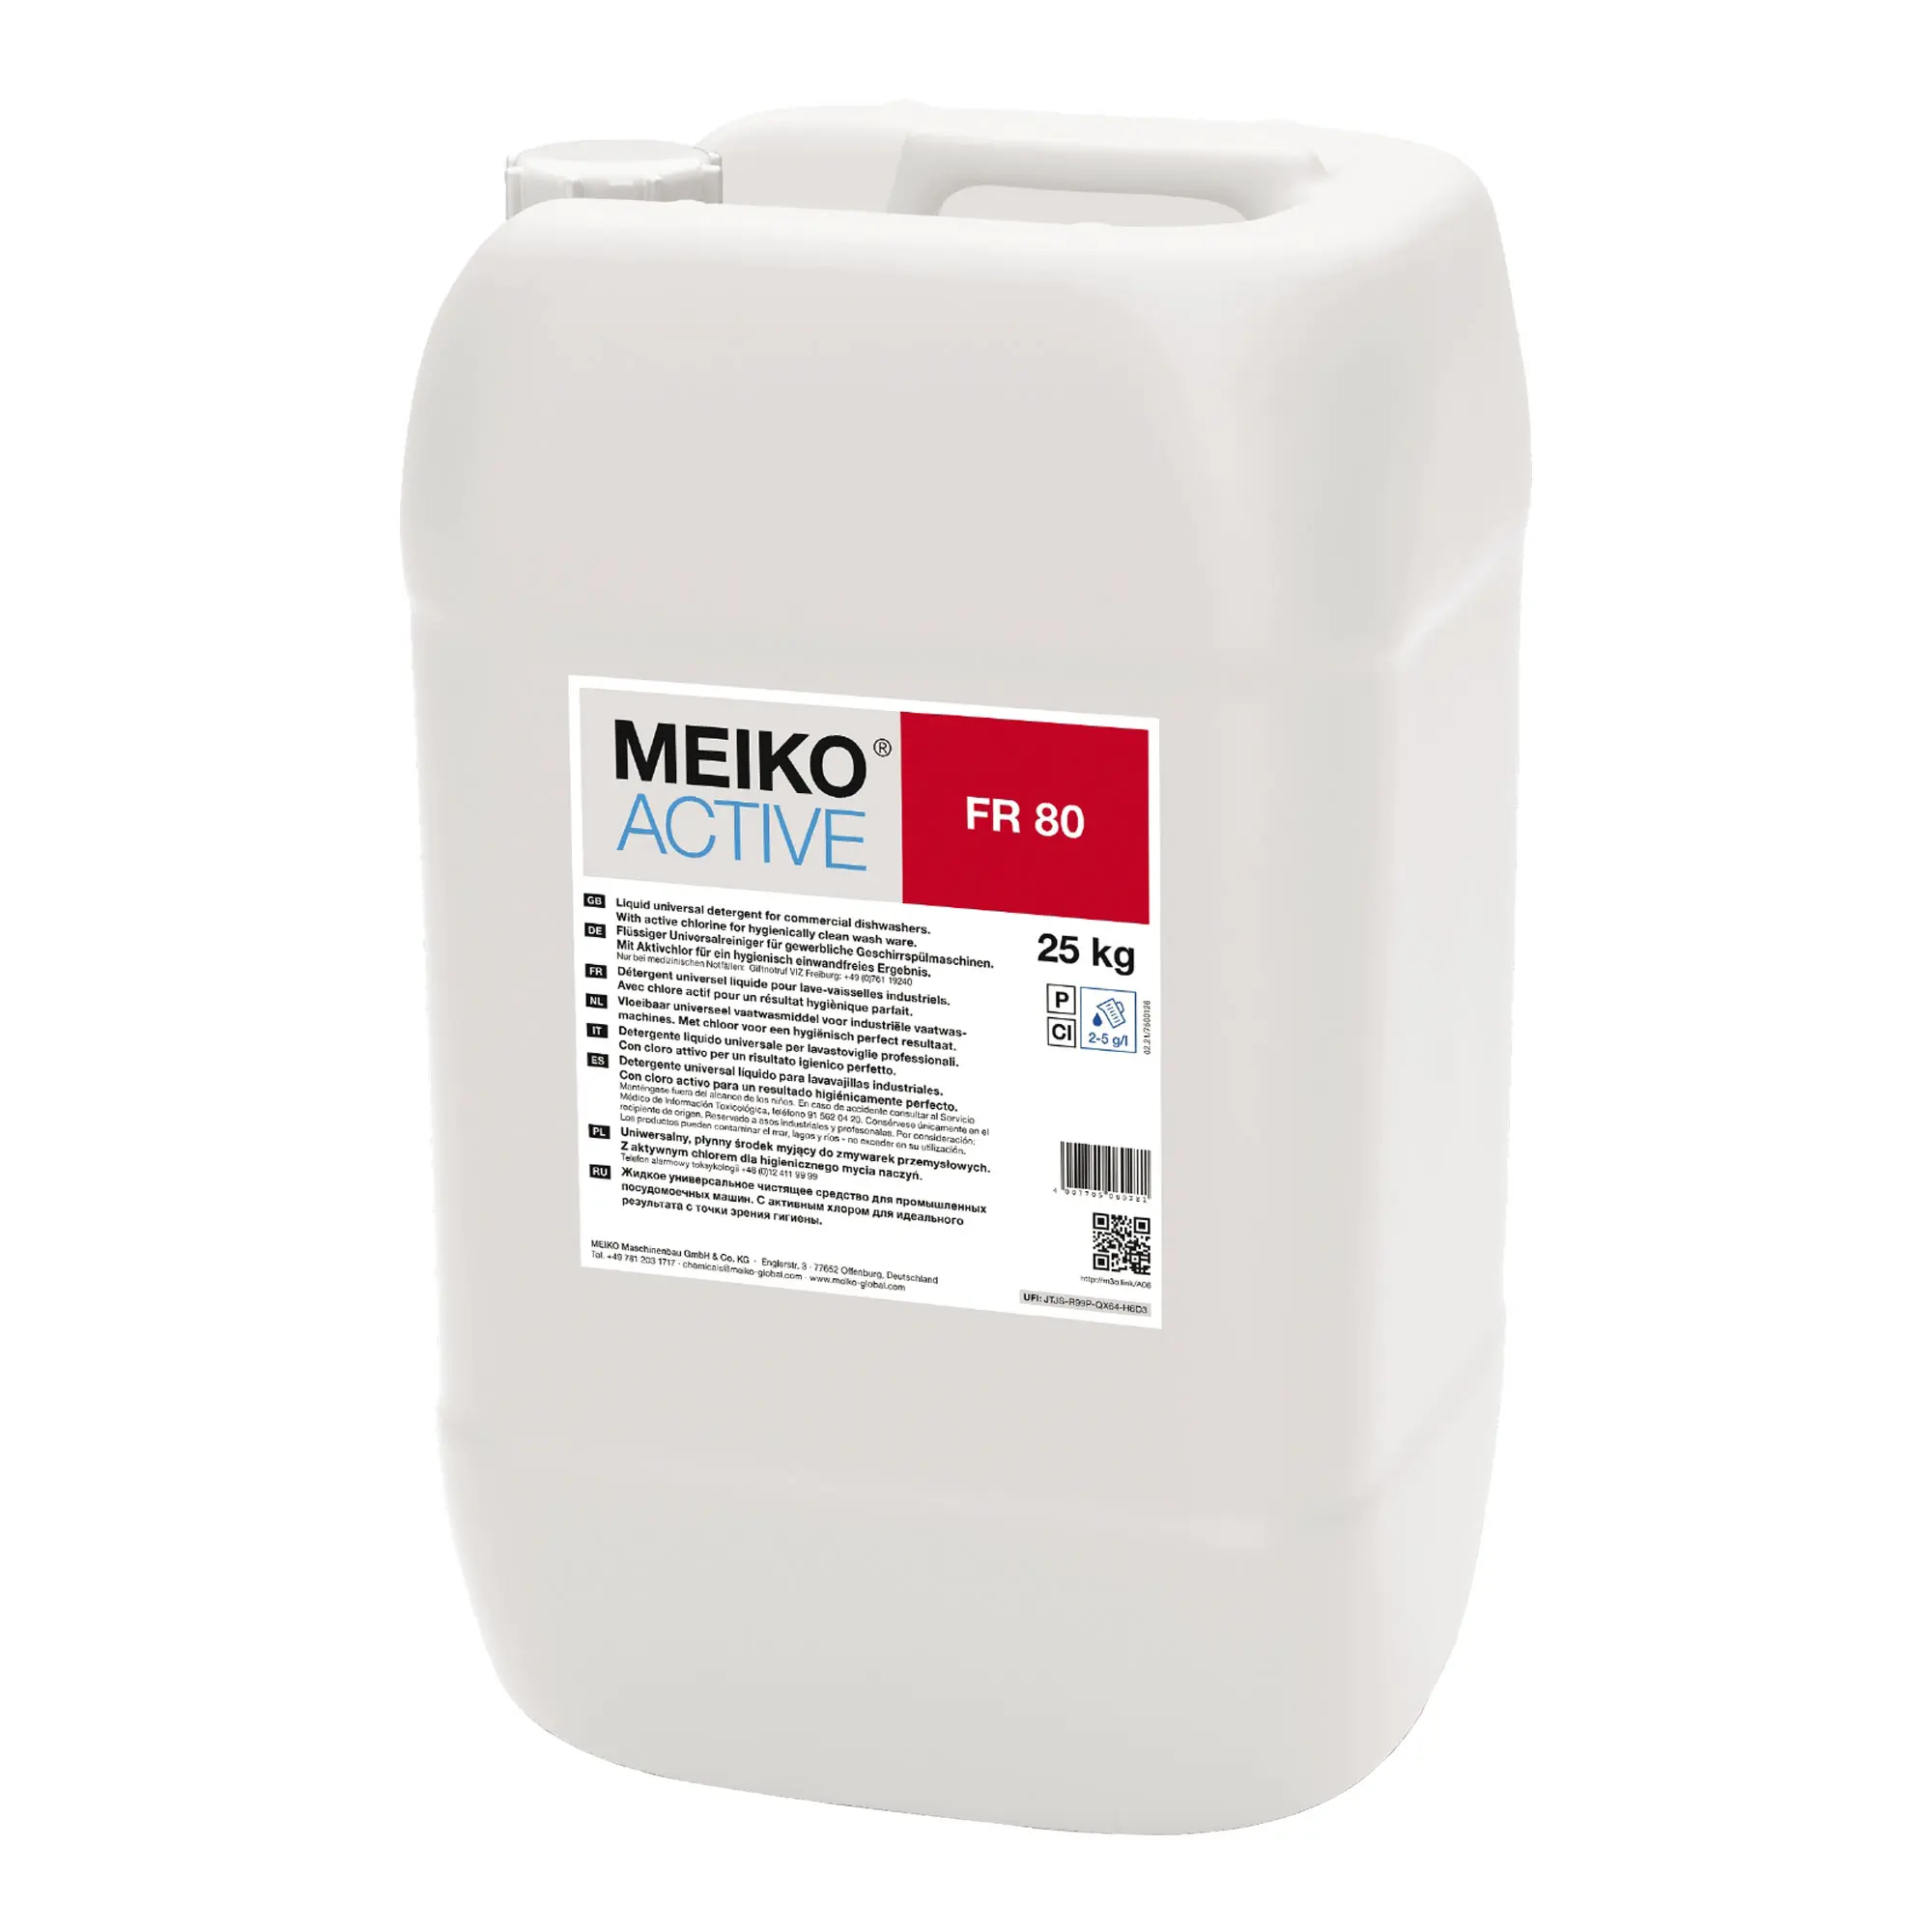 Meiko Active FR 80 flüssiger Universalreiniger für Geschirrspülmaschinen